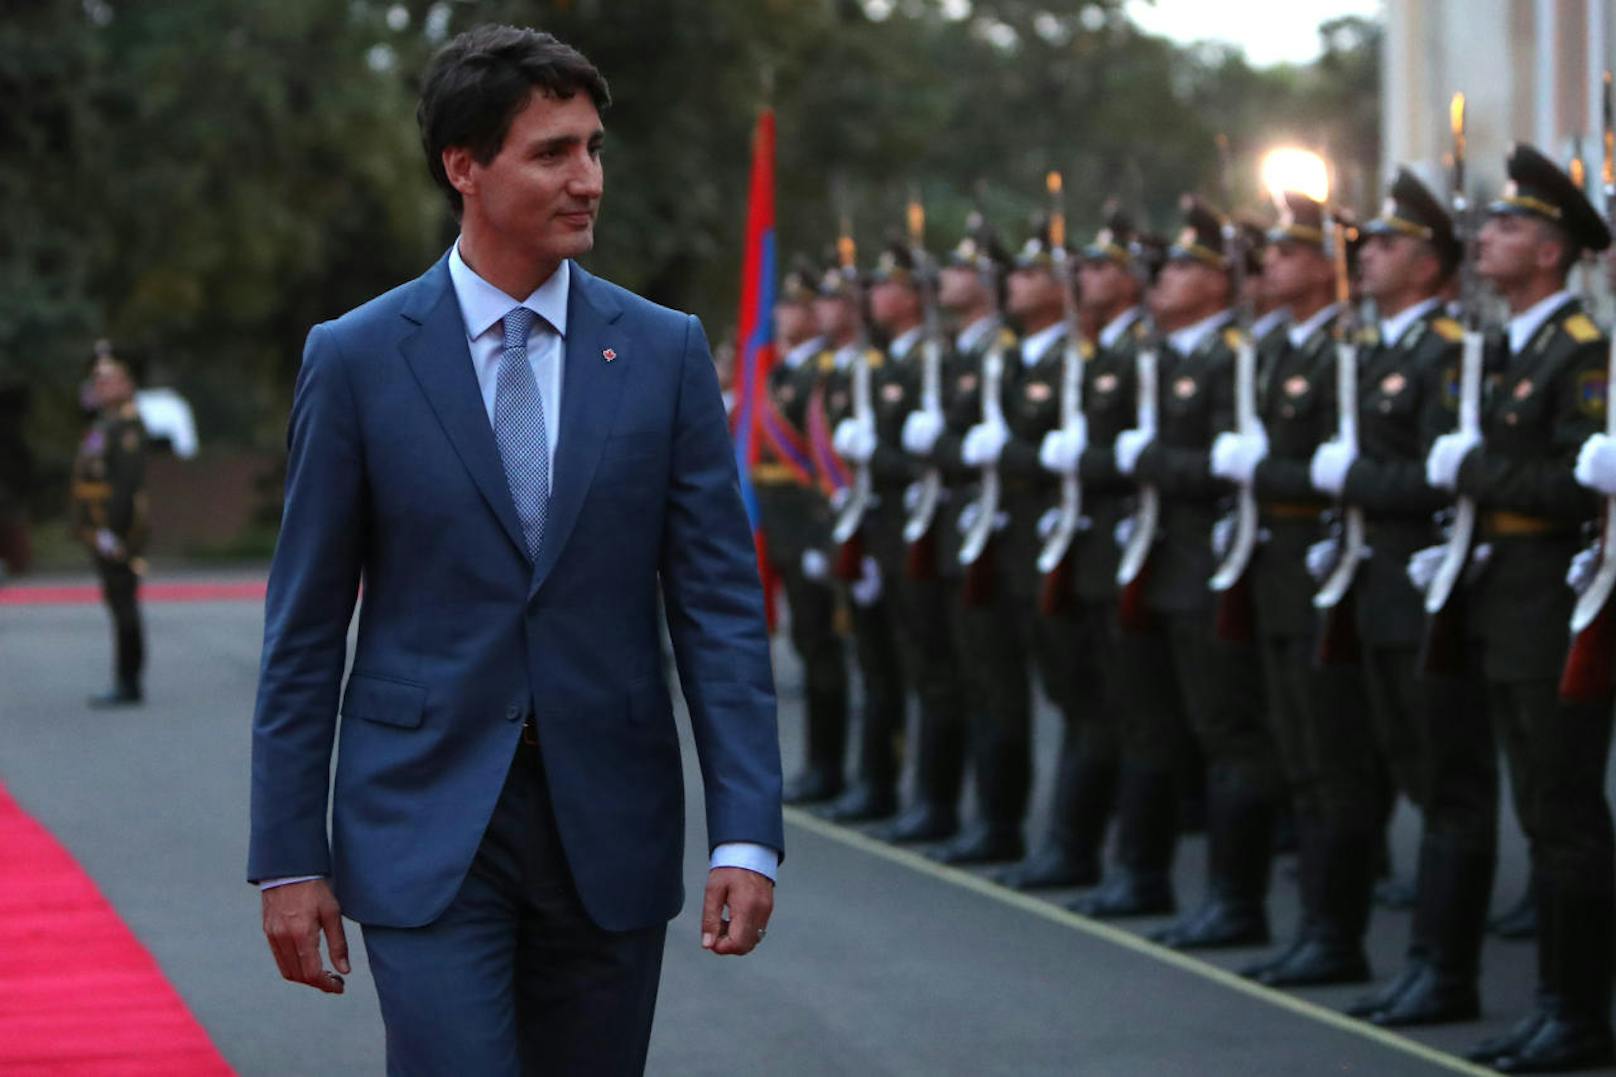 <b>Platz 30: Kanada</b>
Justin Trudeau, Premierminister von Kanada verdient mit <b>164.600 Euro</b> jährlich ebenfalls das Vierfache eines jährlichen Durchschnittseinkommens von 39.900 Euro.